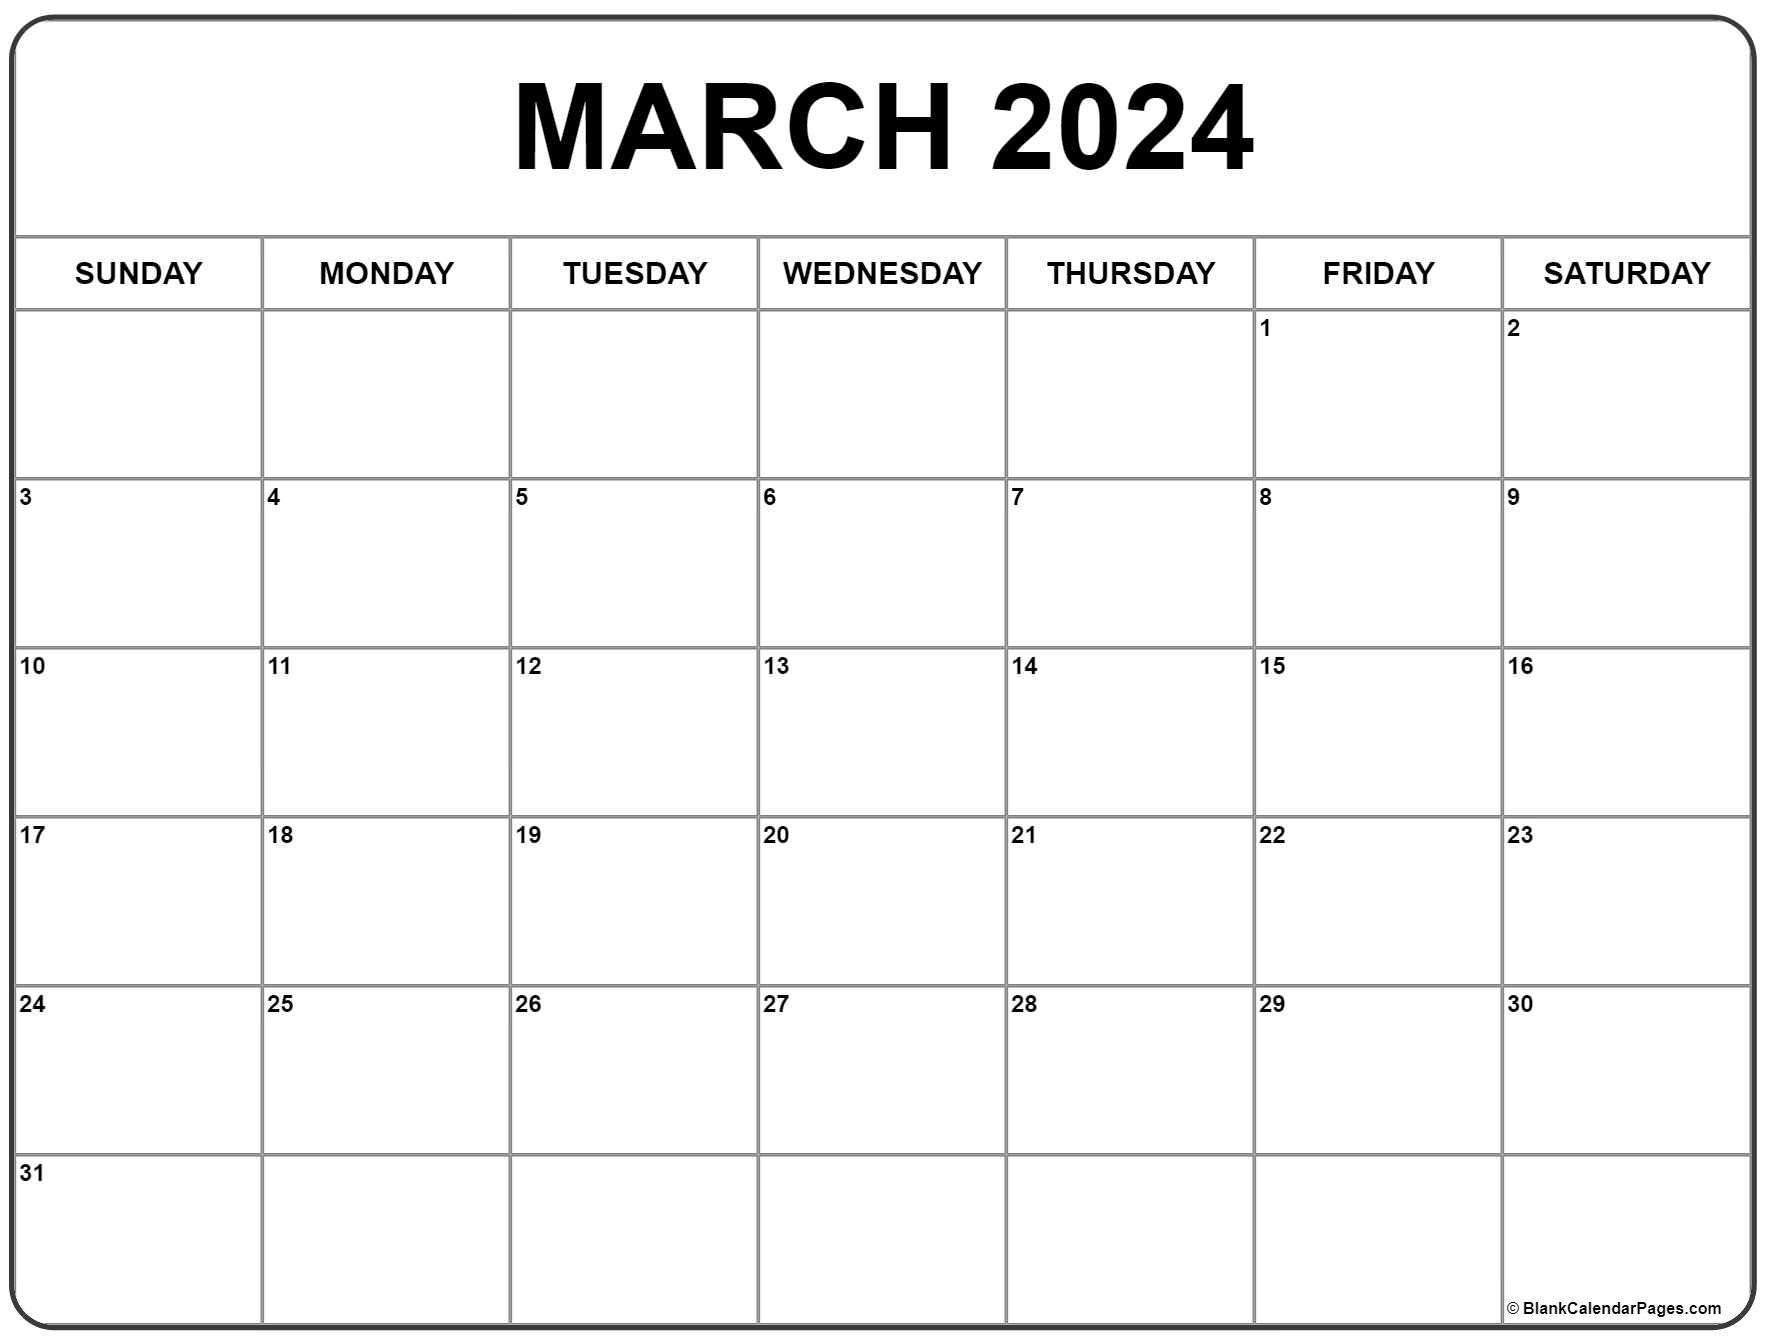 Printable Blank Calendar 2022 March 2022 Calendar | Free Printable Calendar Templates